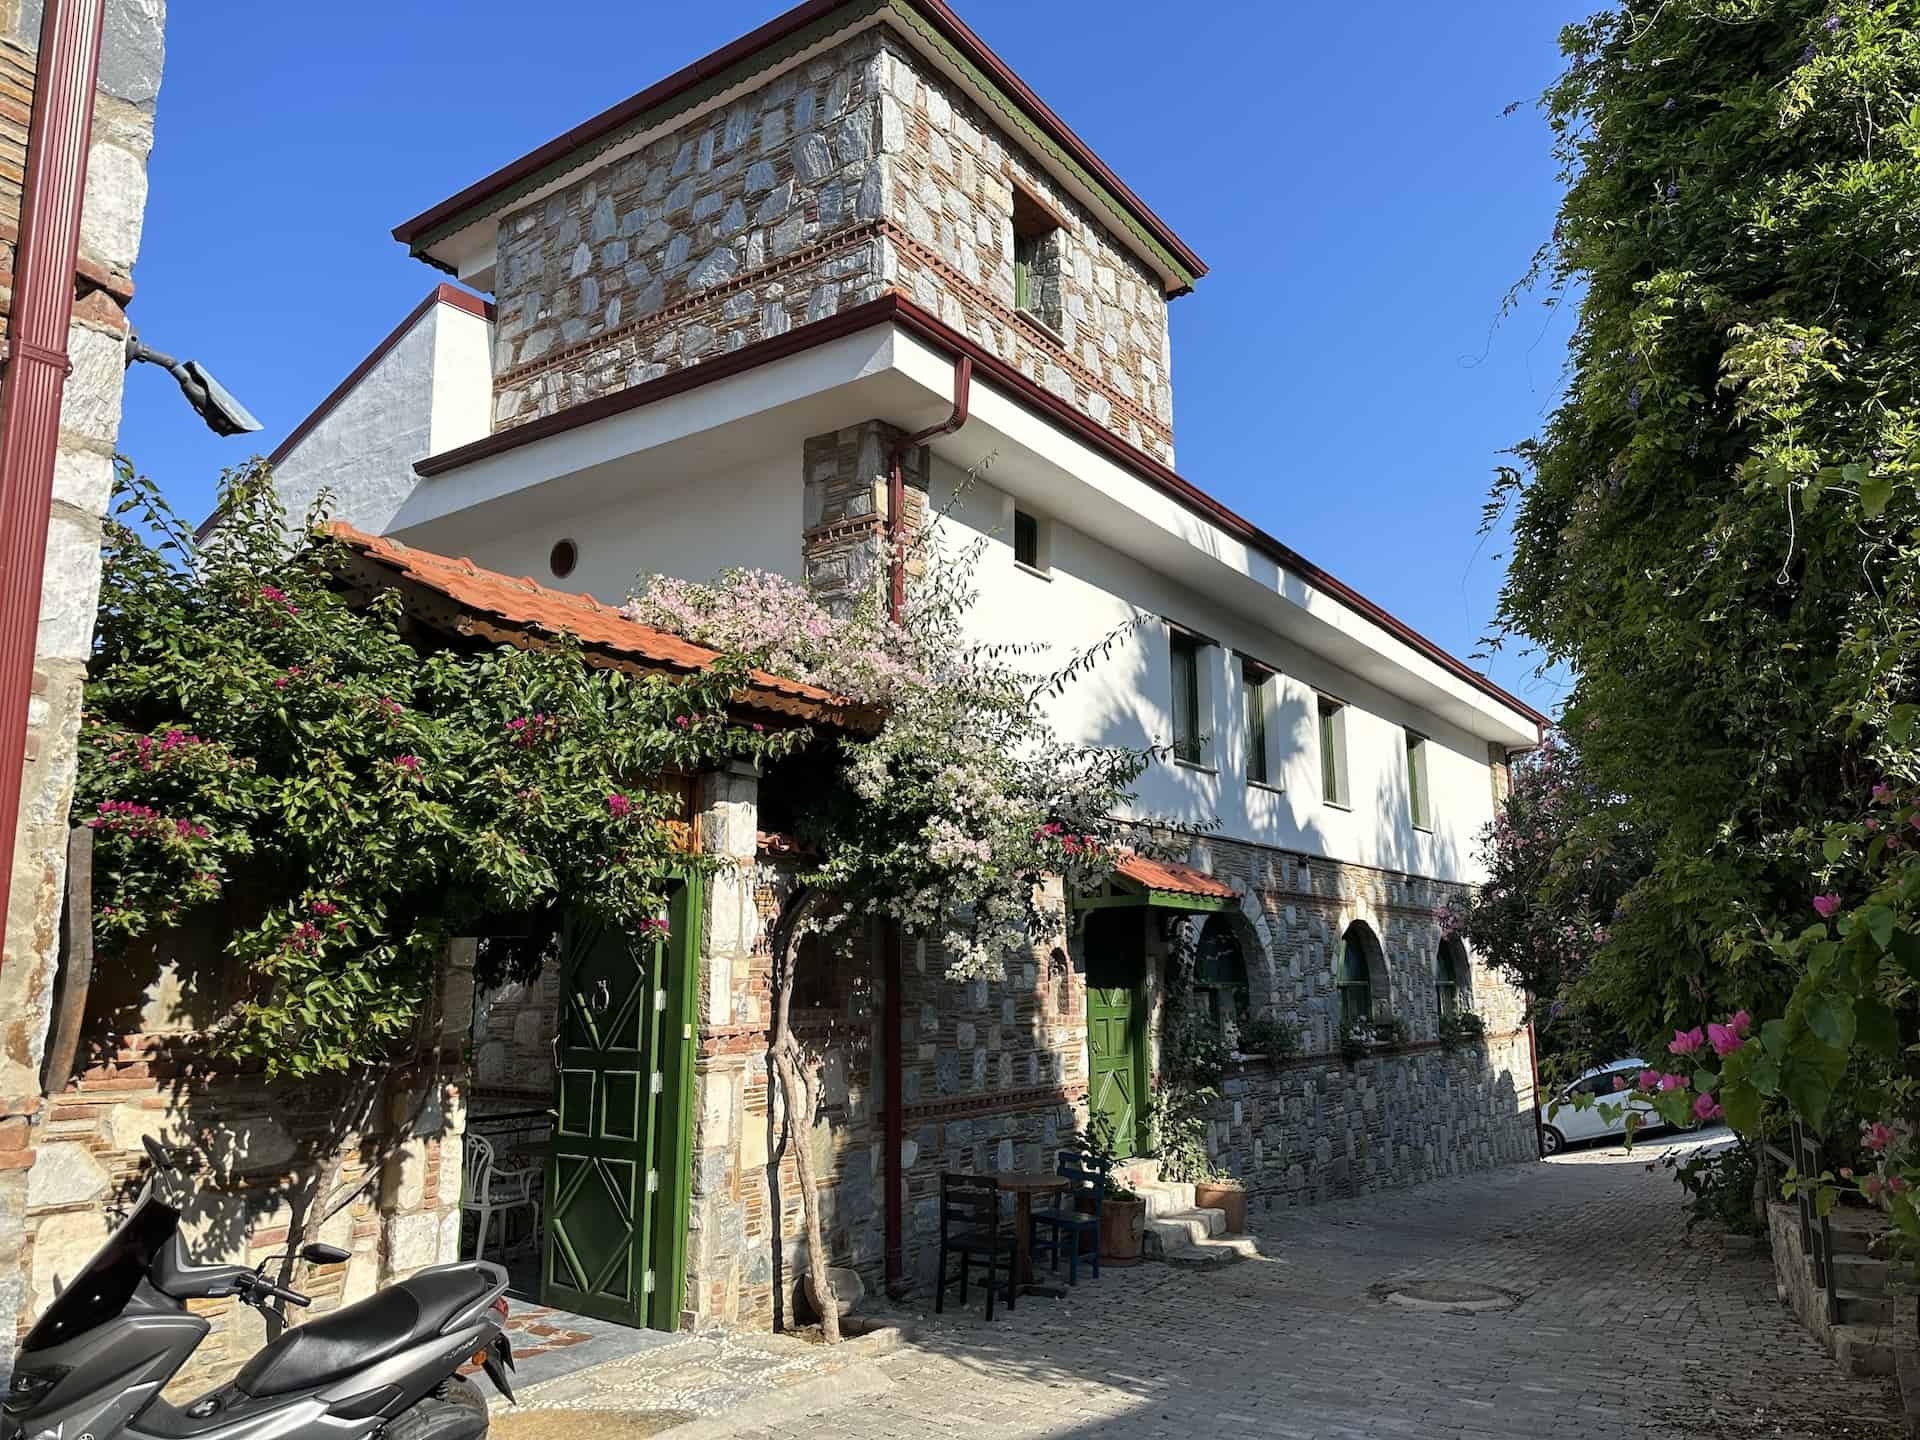 Celsus Hotel in Selçuk, Turkey